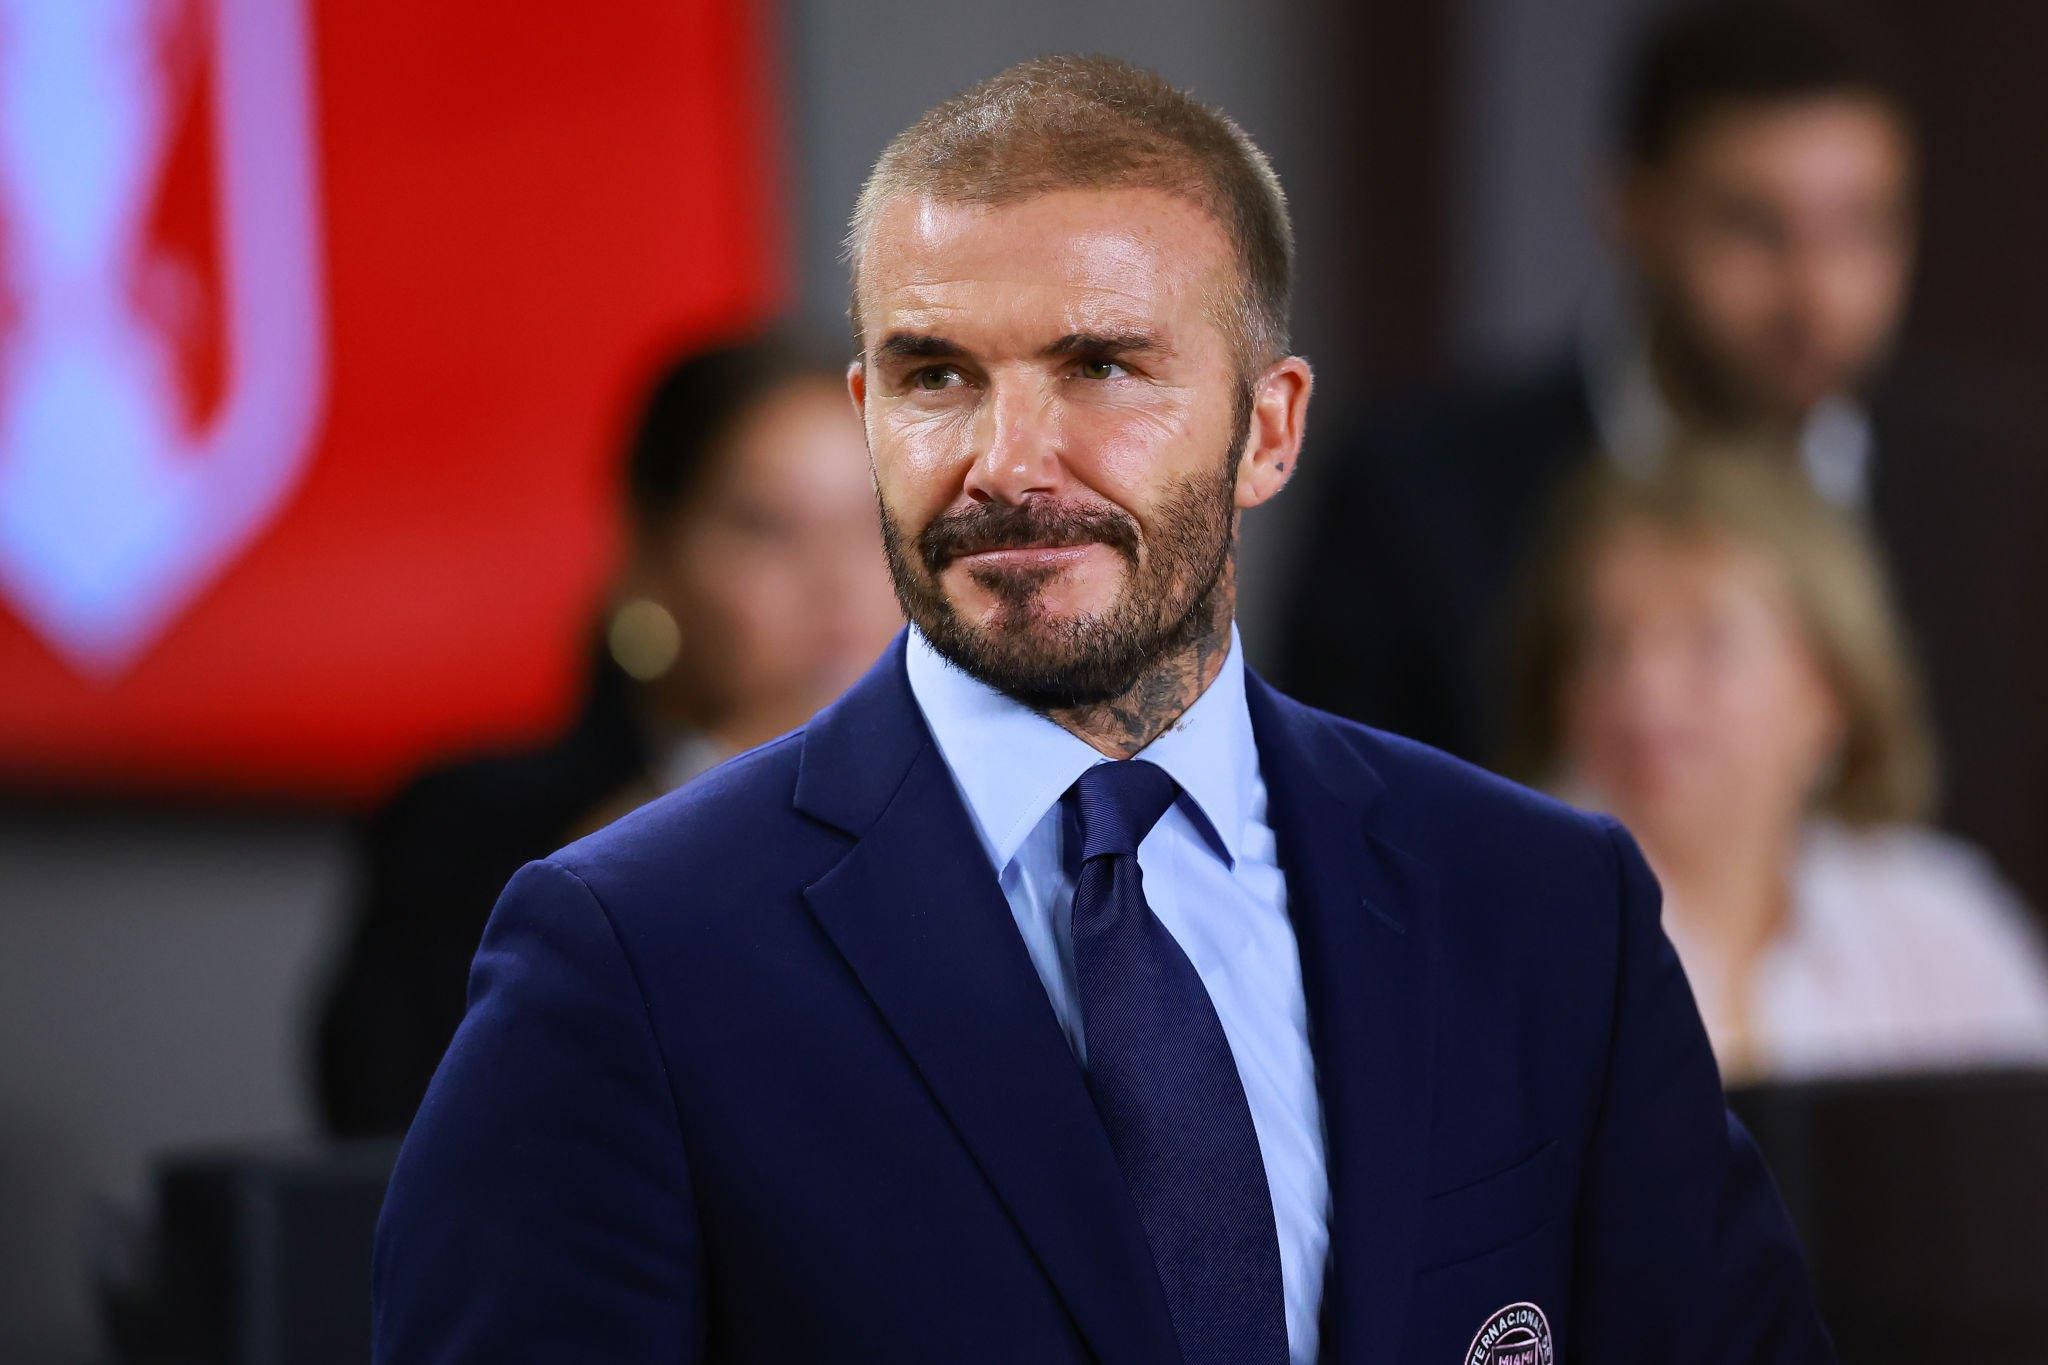 David Beckham Net Worth 2023: Who is richer Victoria or David